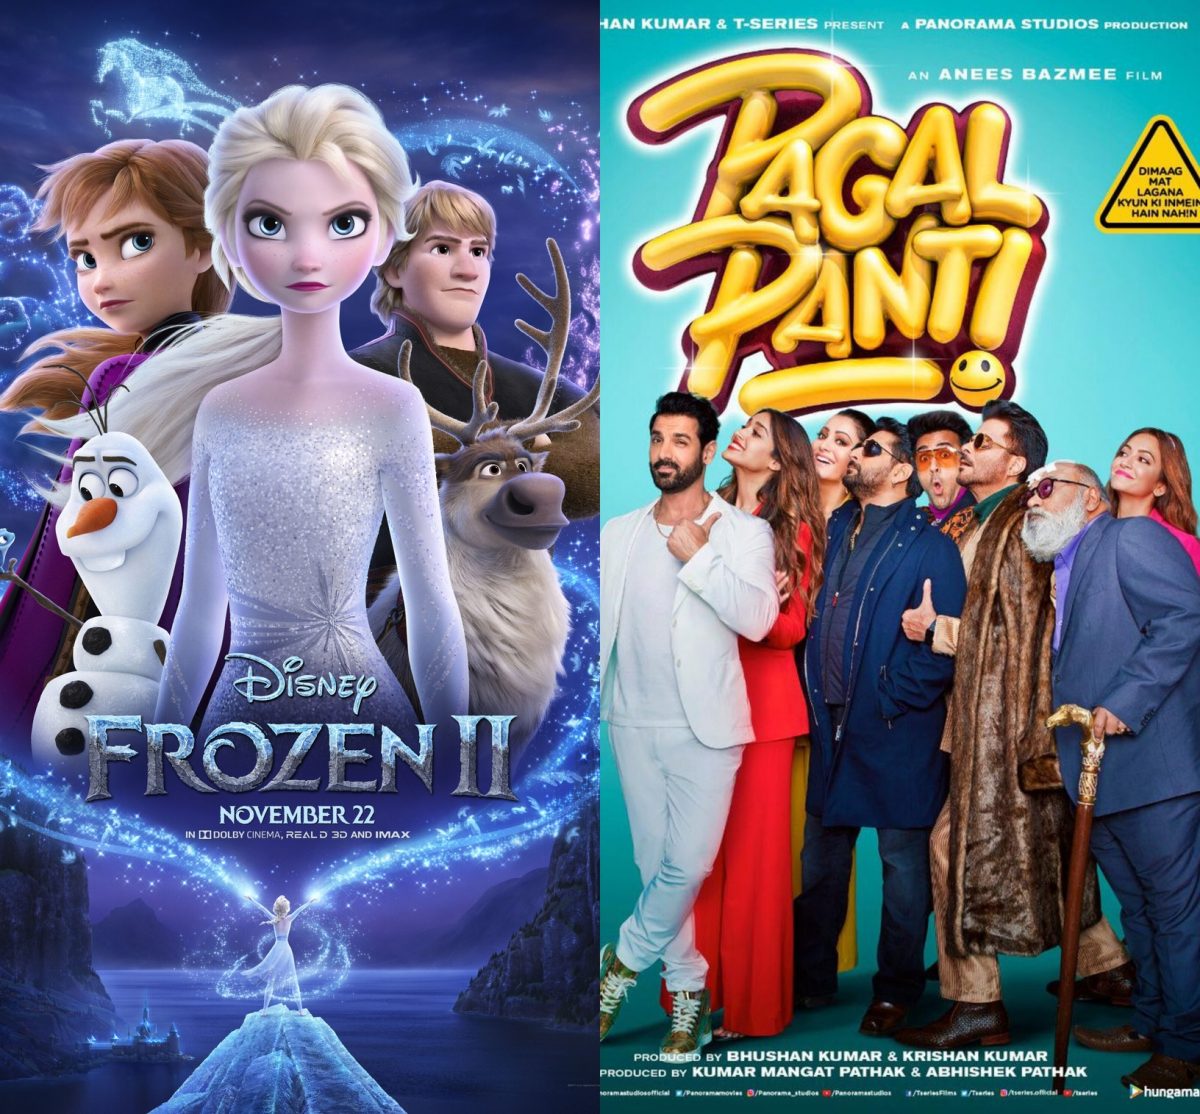 Frozen Beats Pagalpanti At The Box-Office - Masala